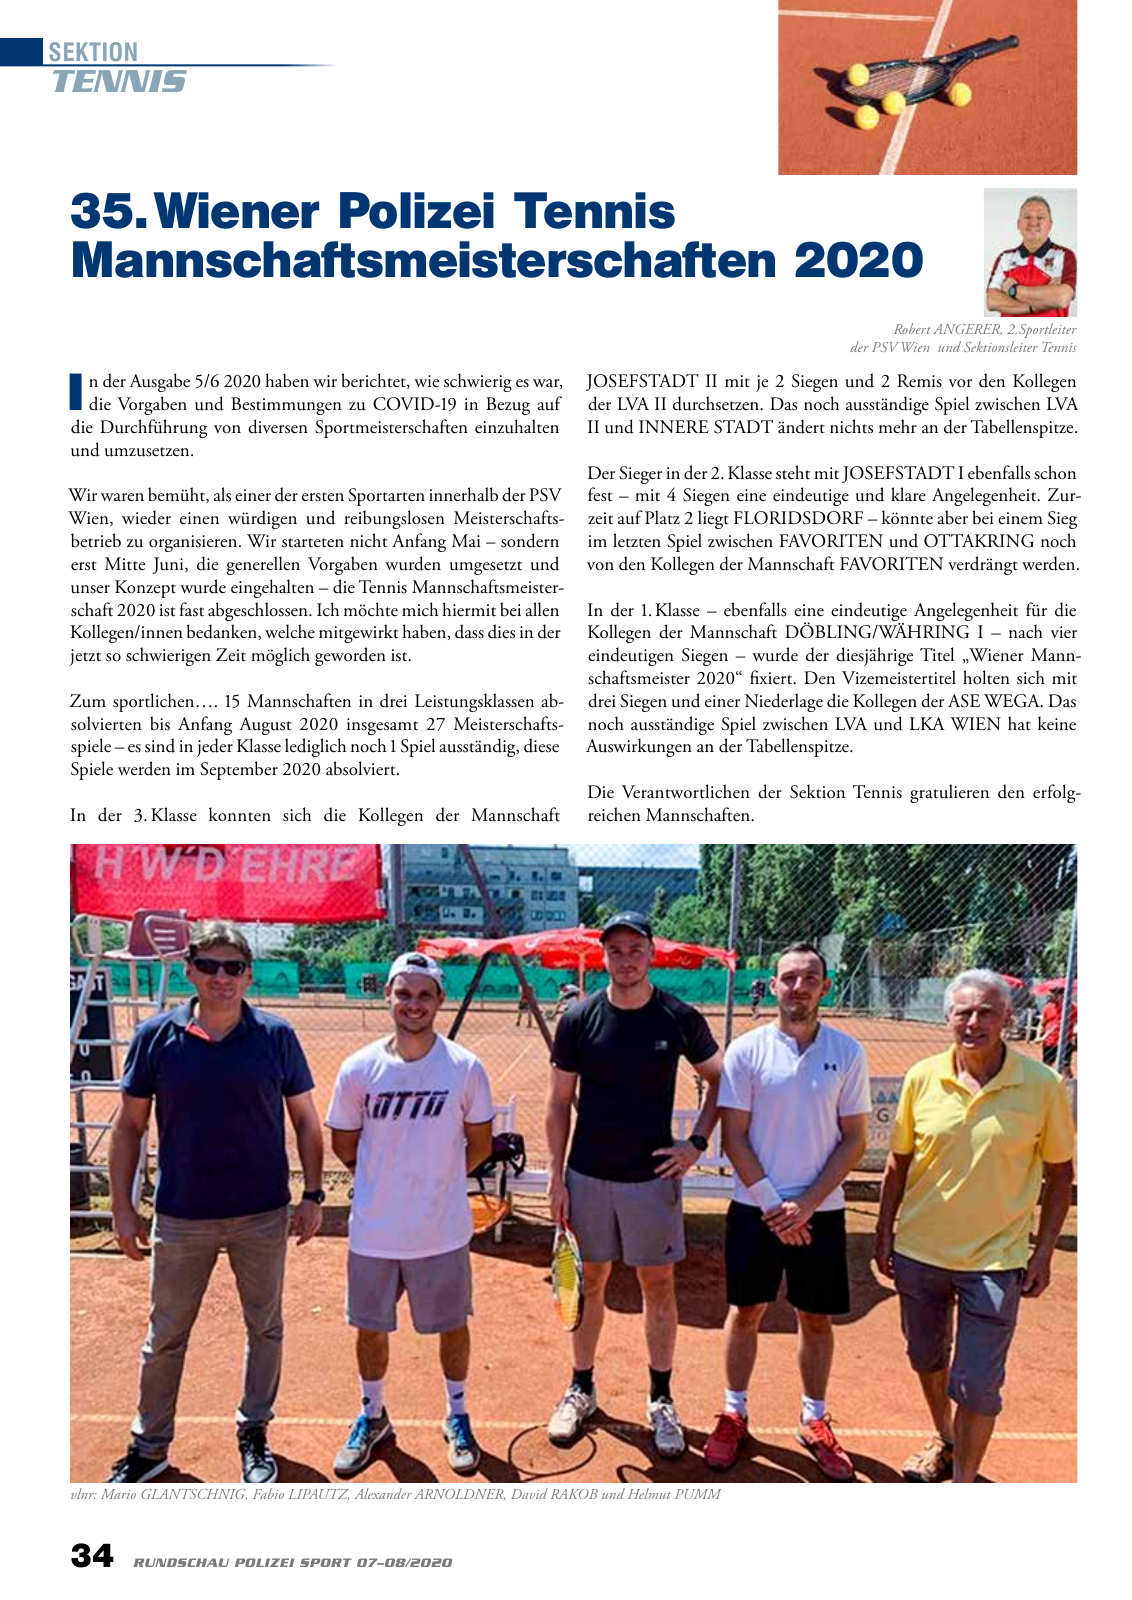 Vorschau Rundschau Polizei Sport 07-08/2020 Seite 34